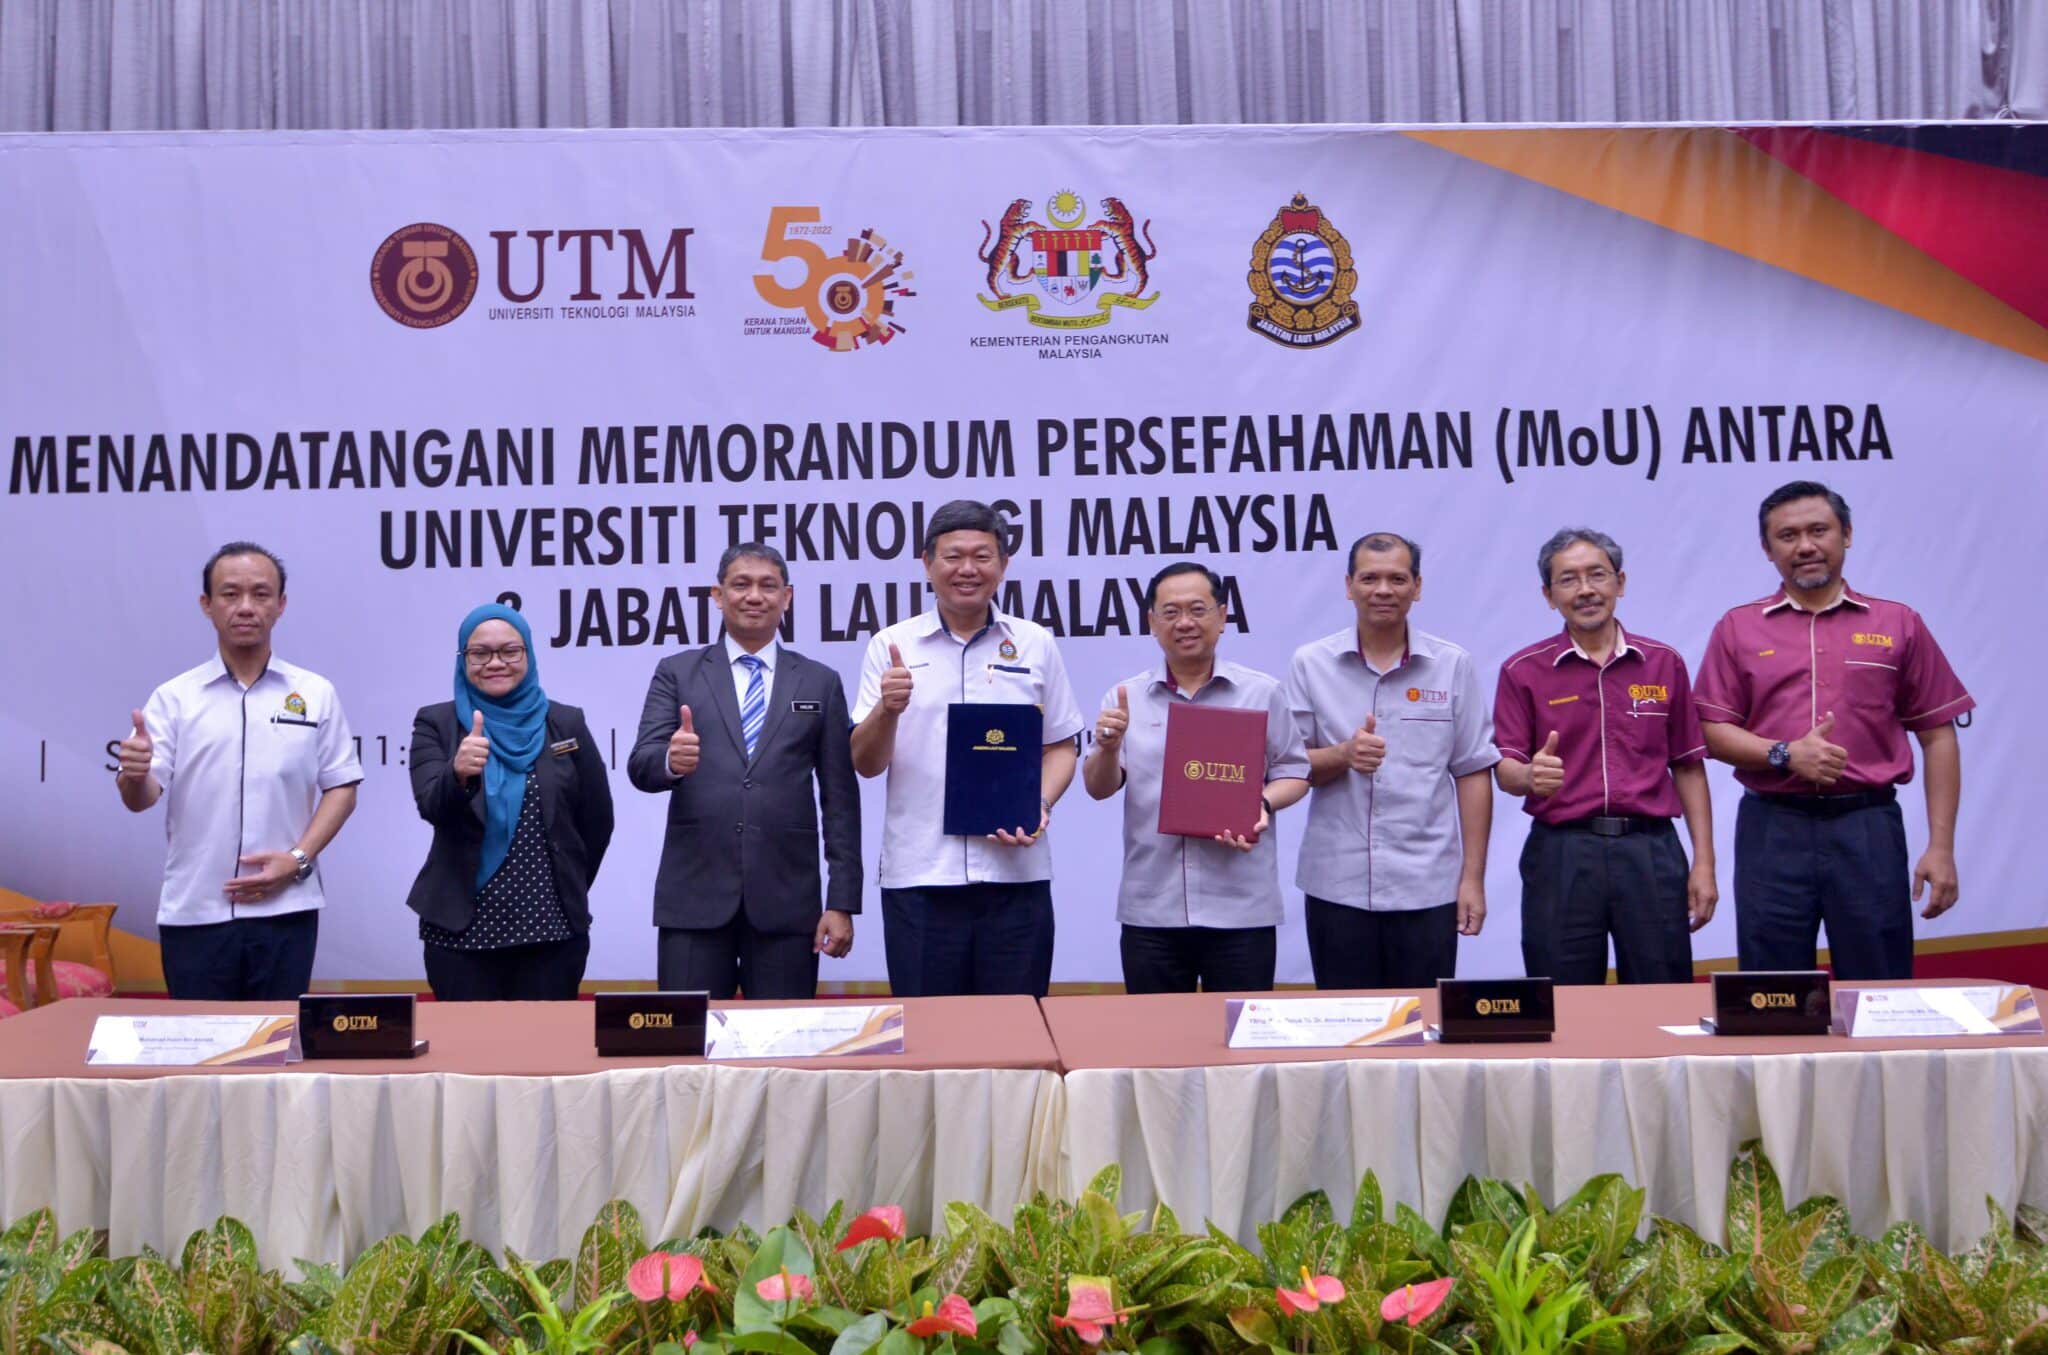 UTM-Jabatan Laut Malaysia meterai MoU perkukuh kerjasama sektor maritim